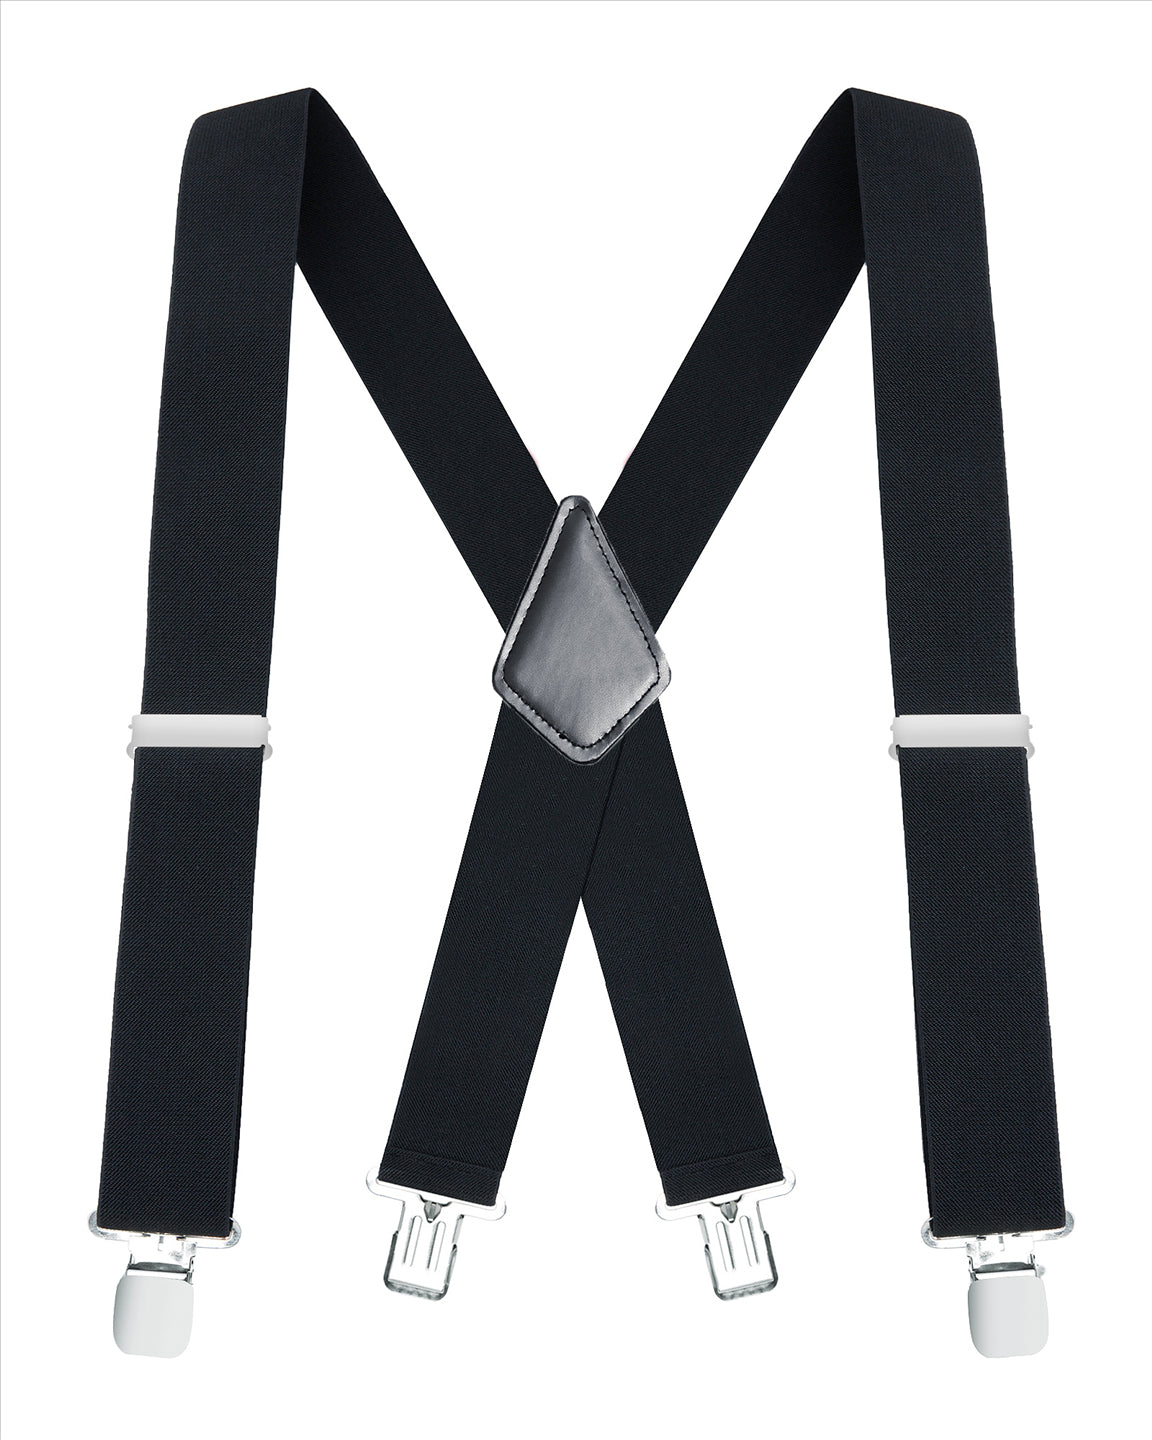 Buyless Fashion Mens Suspenders - 48